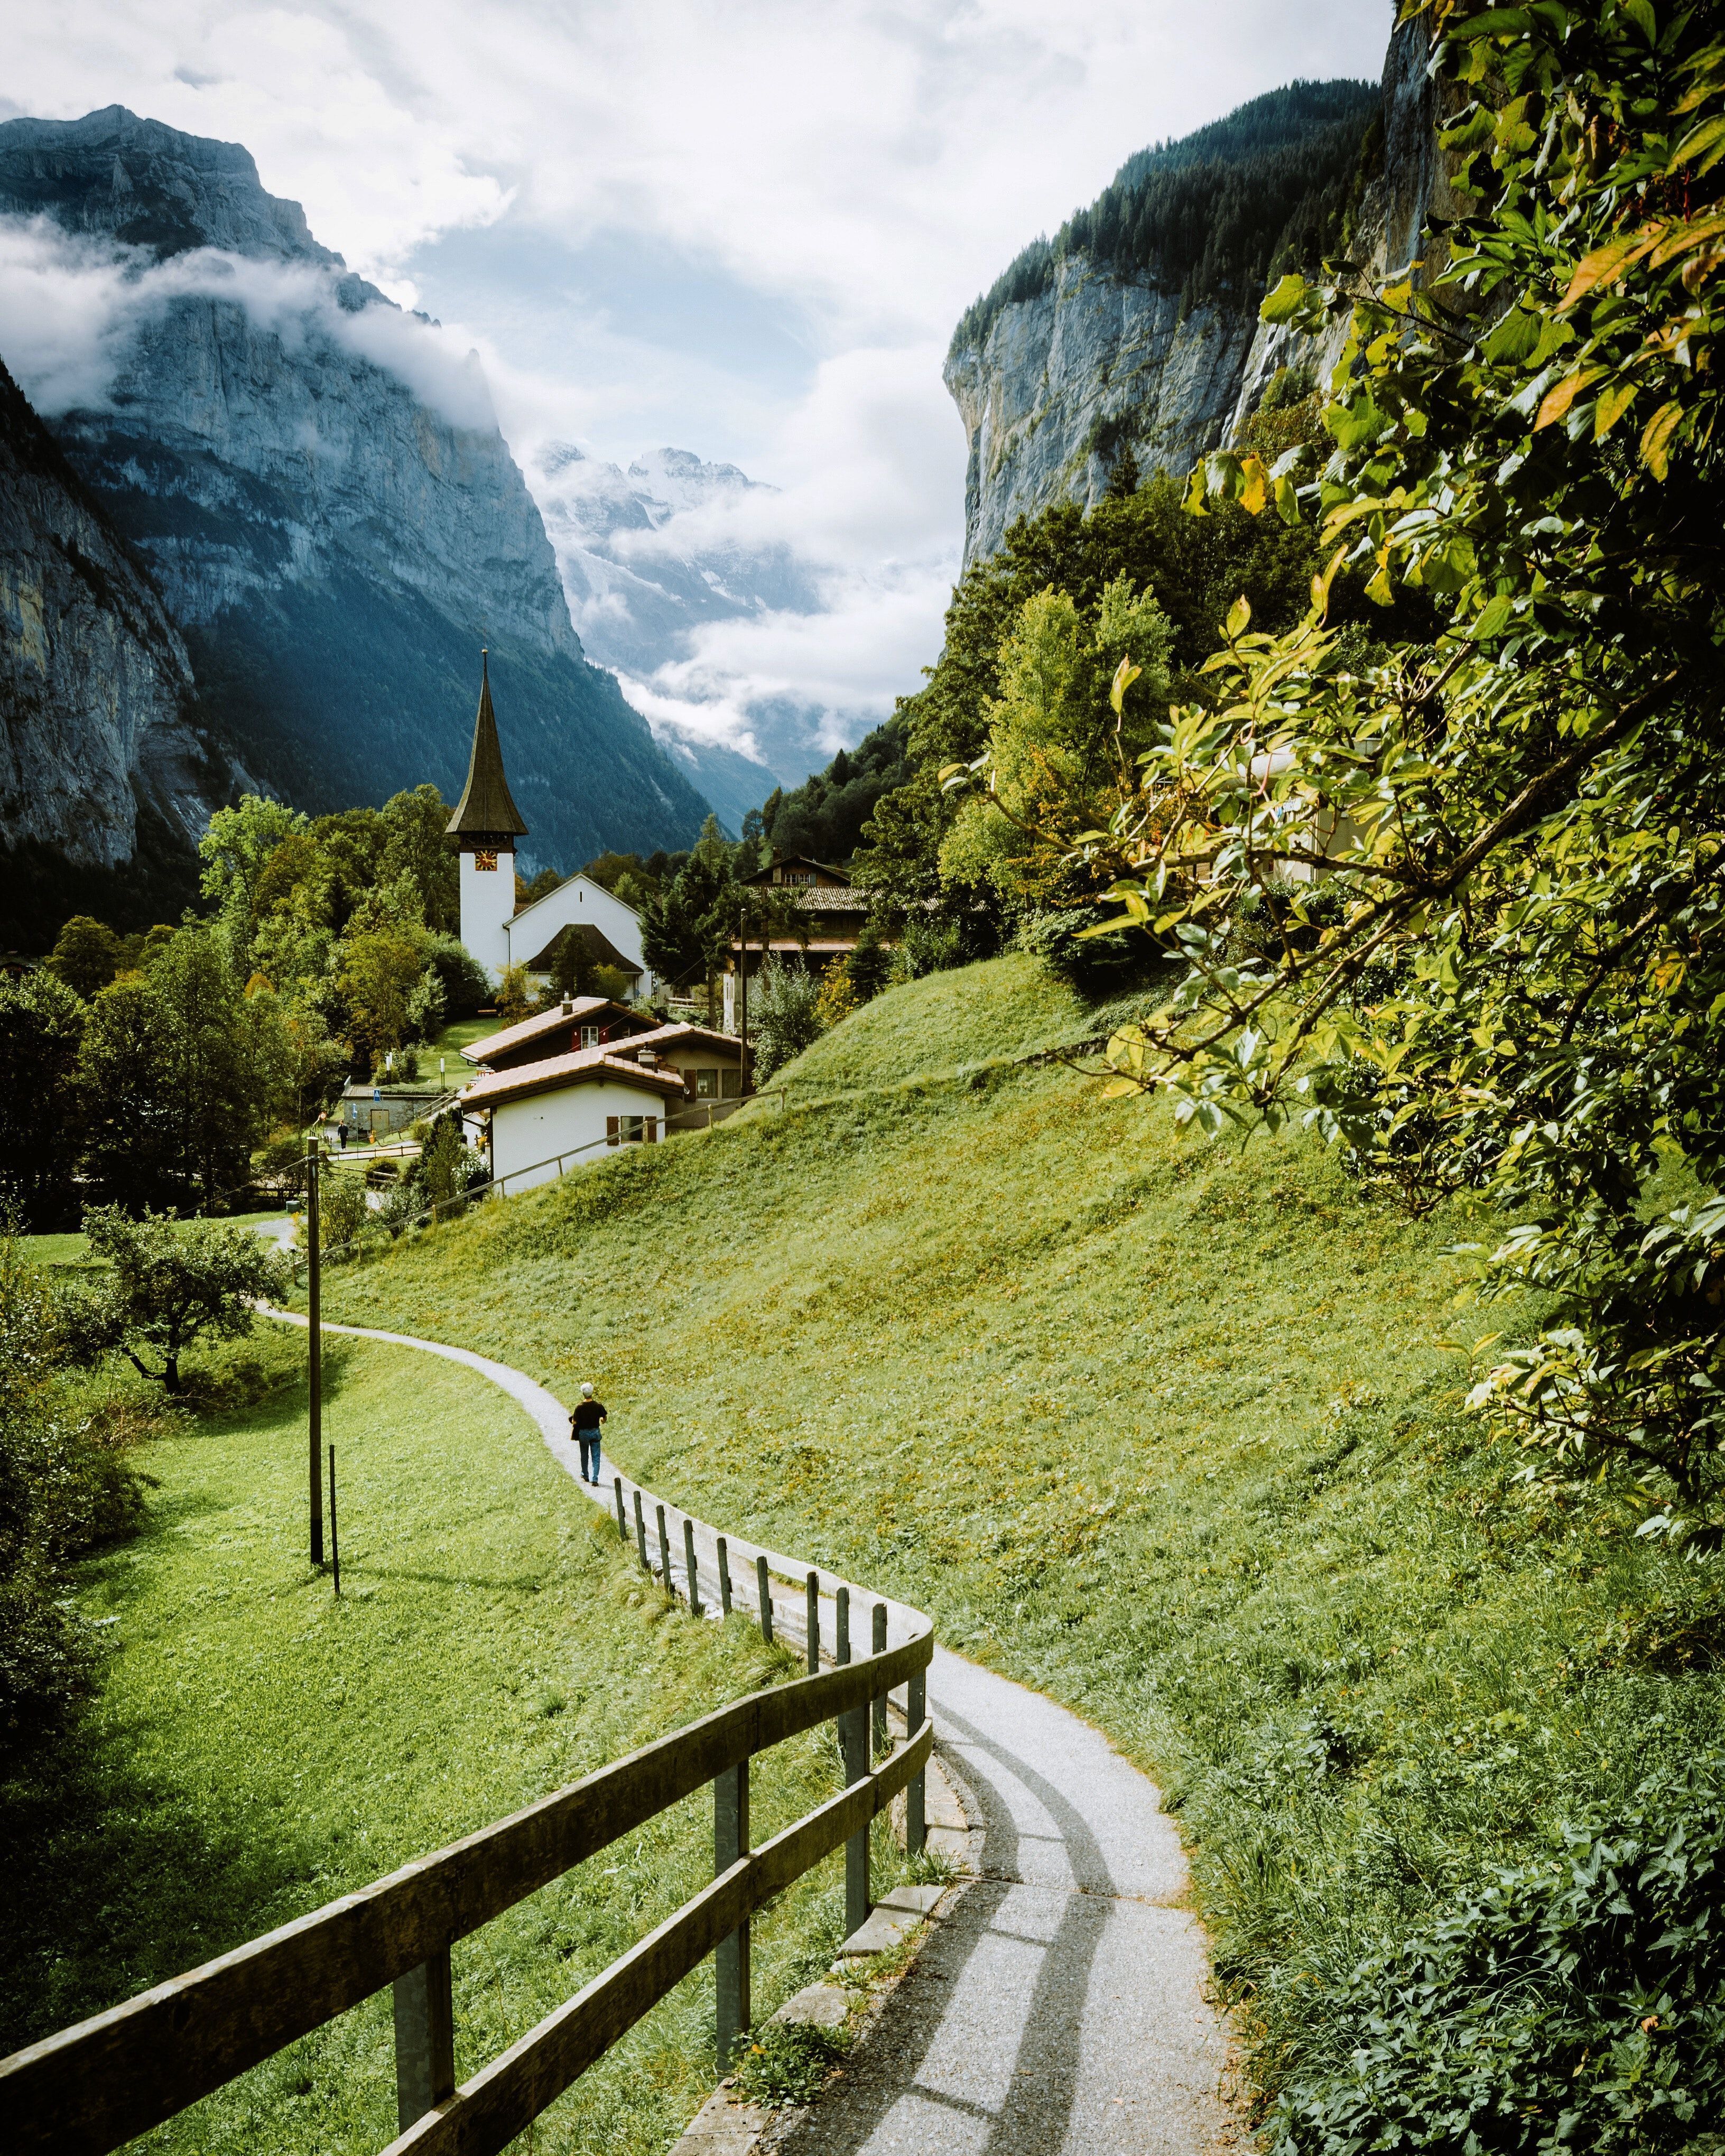  Schweiz Hintergrundbild 3264x4080. 1.Schweiz Bilder Und Fotos · Kostenlos Downloaden · Stock Fotos